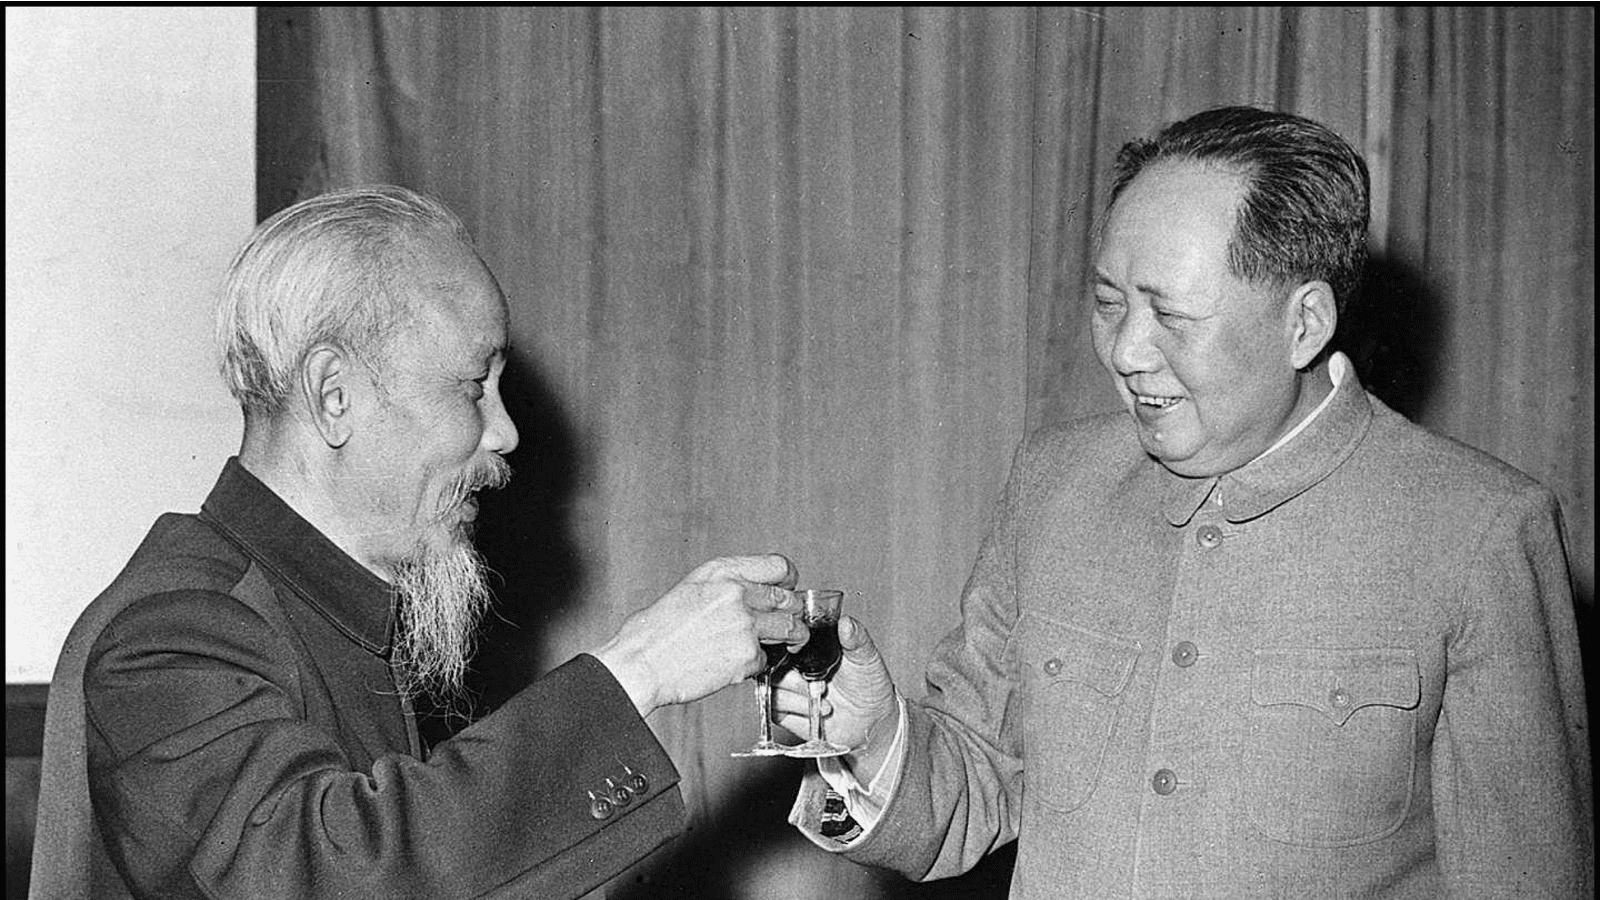 Mao Zedong et Ho Chi Minh en marge de la bataille de Dien Bien Phu, 1960.
Auteurs  : CHINE NOUVELLE/SIPA.
Numéro de reportage  : 00492302_000014